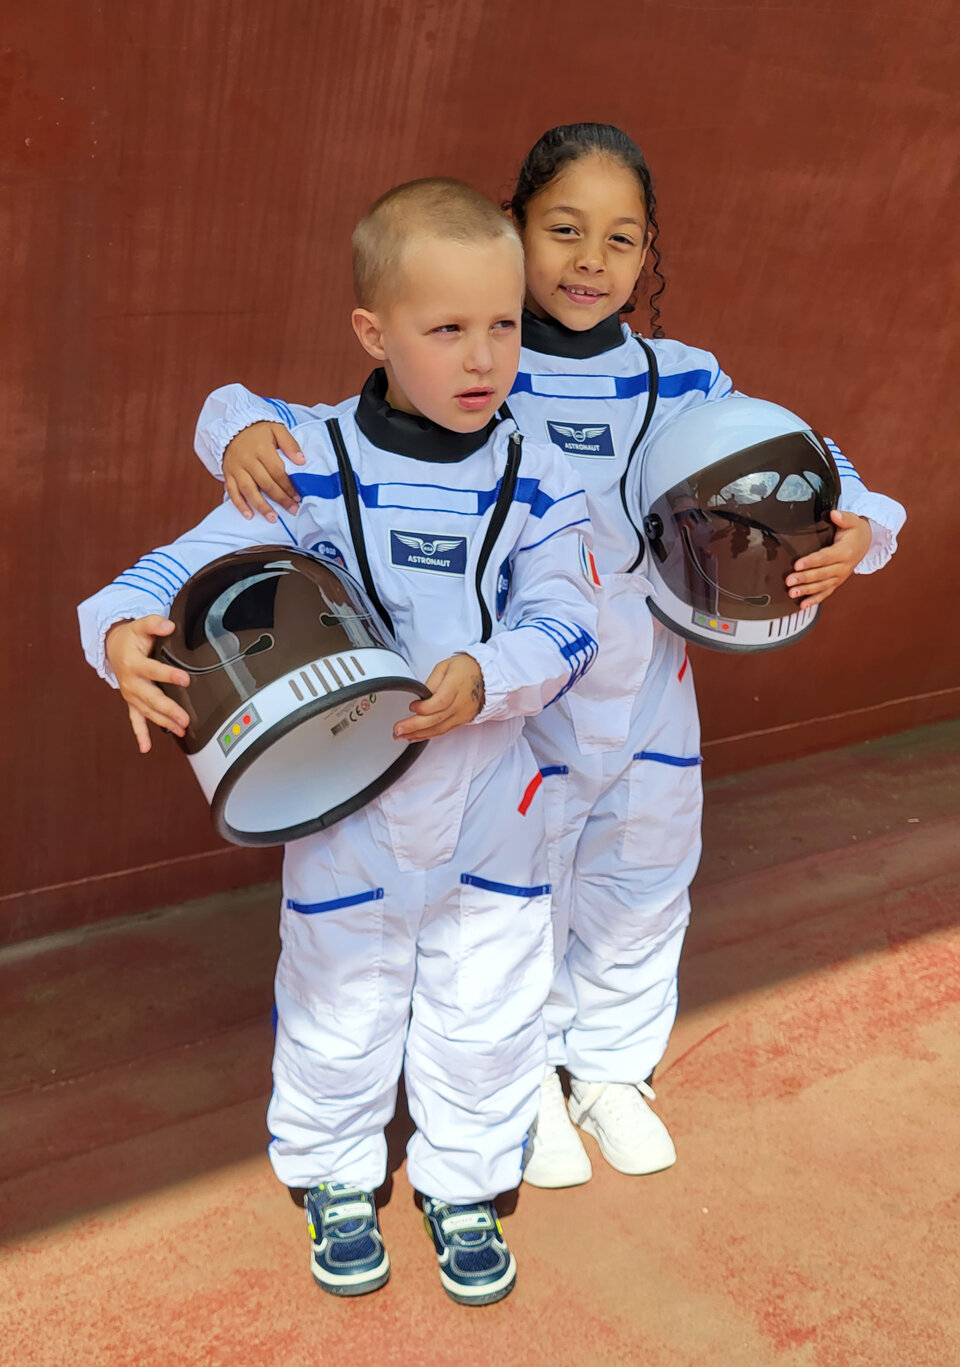 Les enfants se demandent souvent ce qu’ils feront quand ils seront grands. Un déguisement d’astronaute pourrait être l’étincelle qui les mènera à une future carrière dans l’espace.